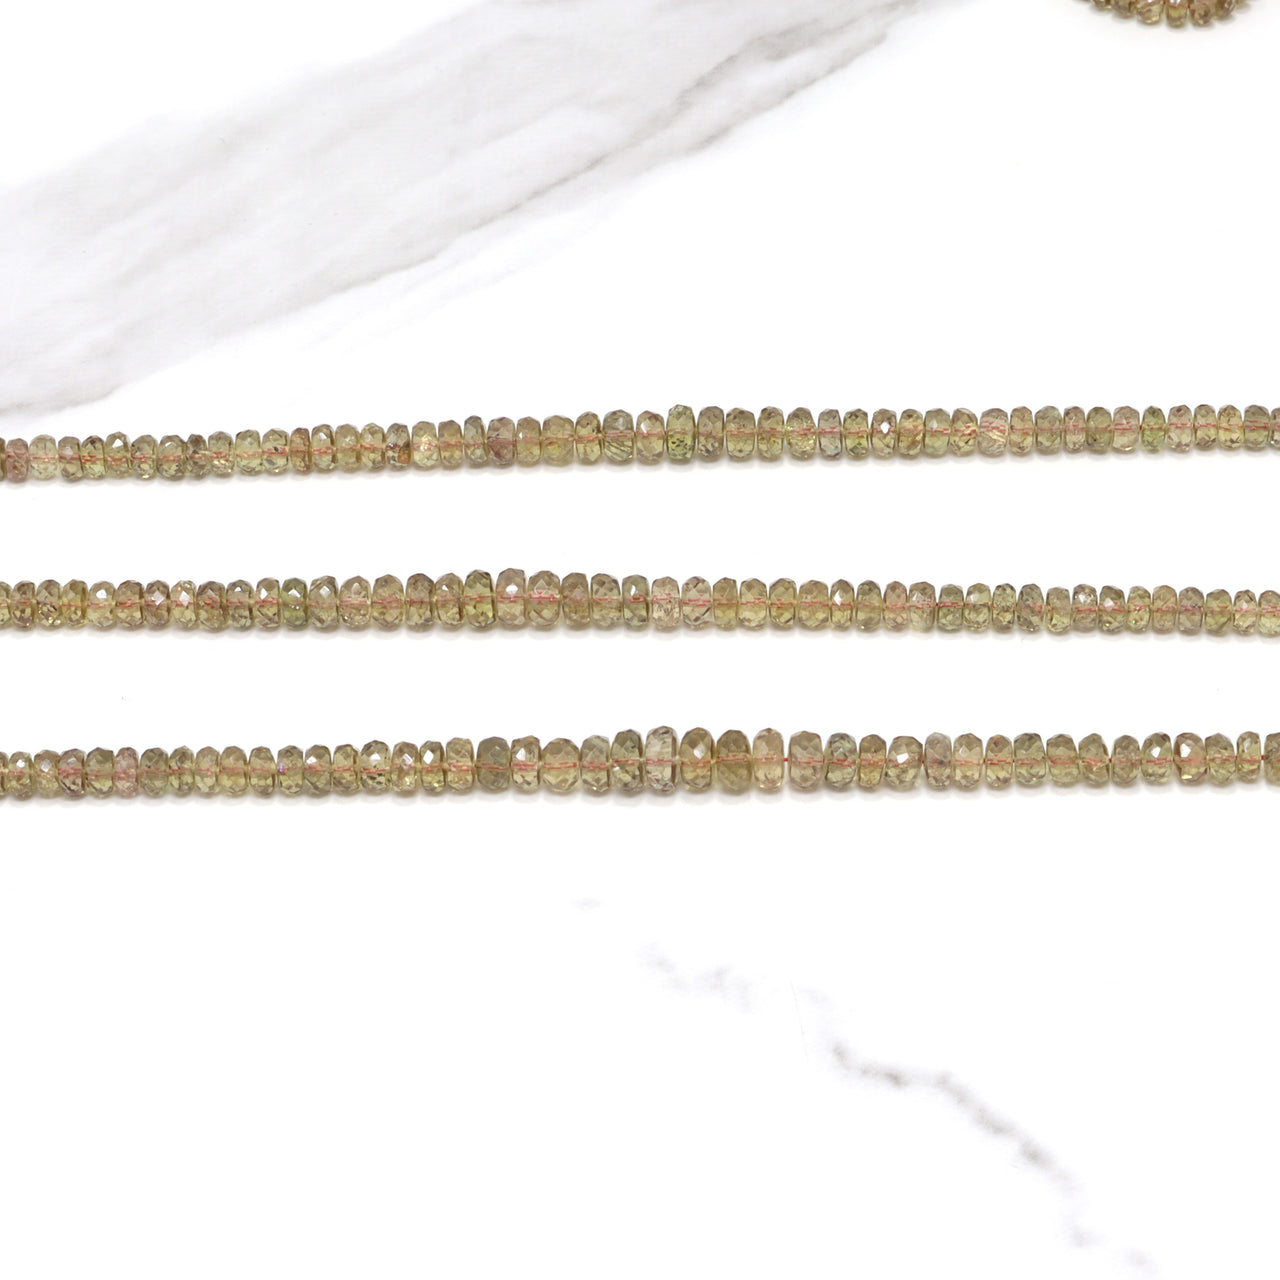 Color Change Garnet 3mm - 5mm Faceted Rondelles 11 Strand Bead Necklace